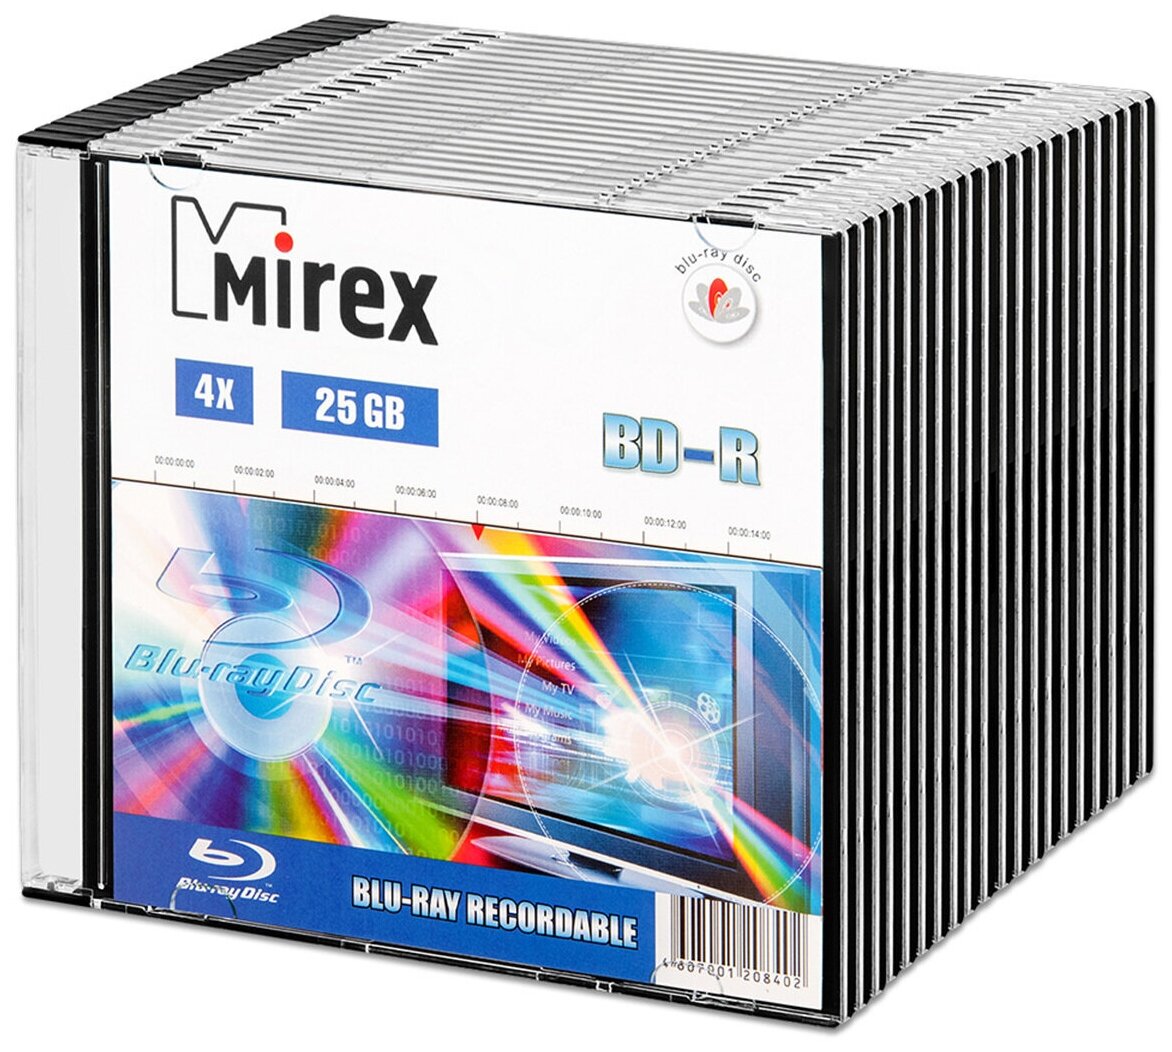 Диск BD-R 25 Gb Mirex 4x Slim box, упаковка 20 шт.